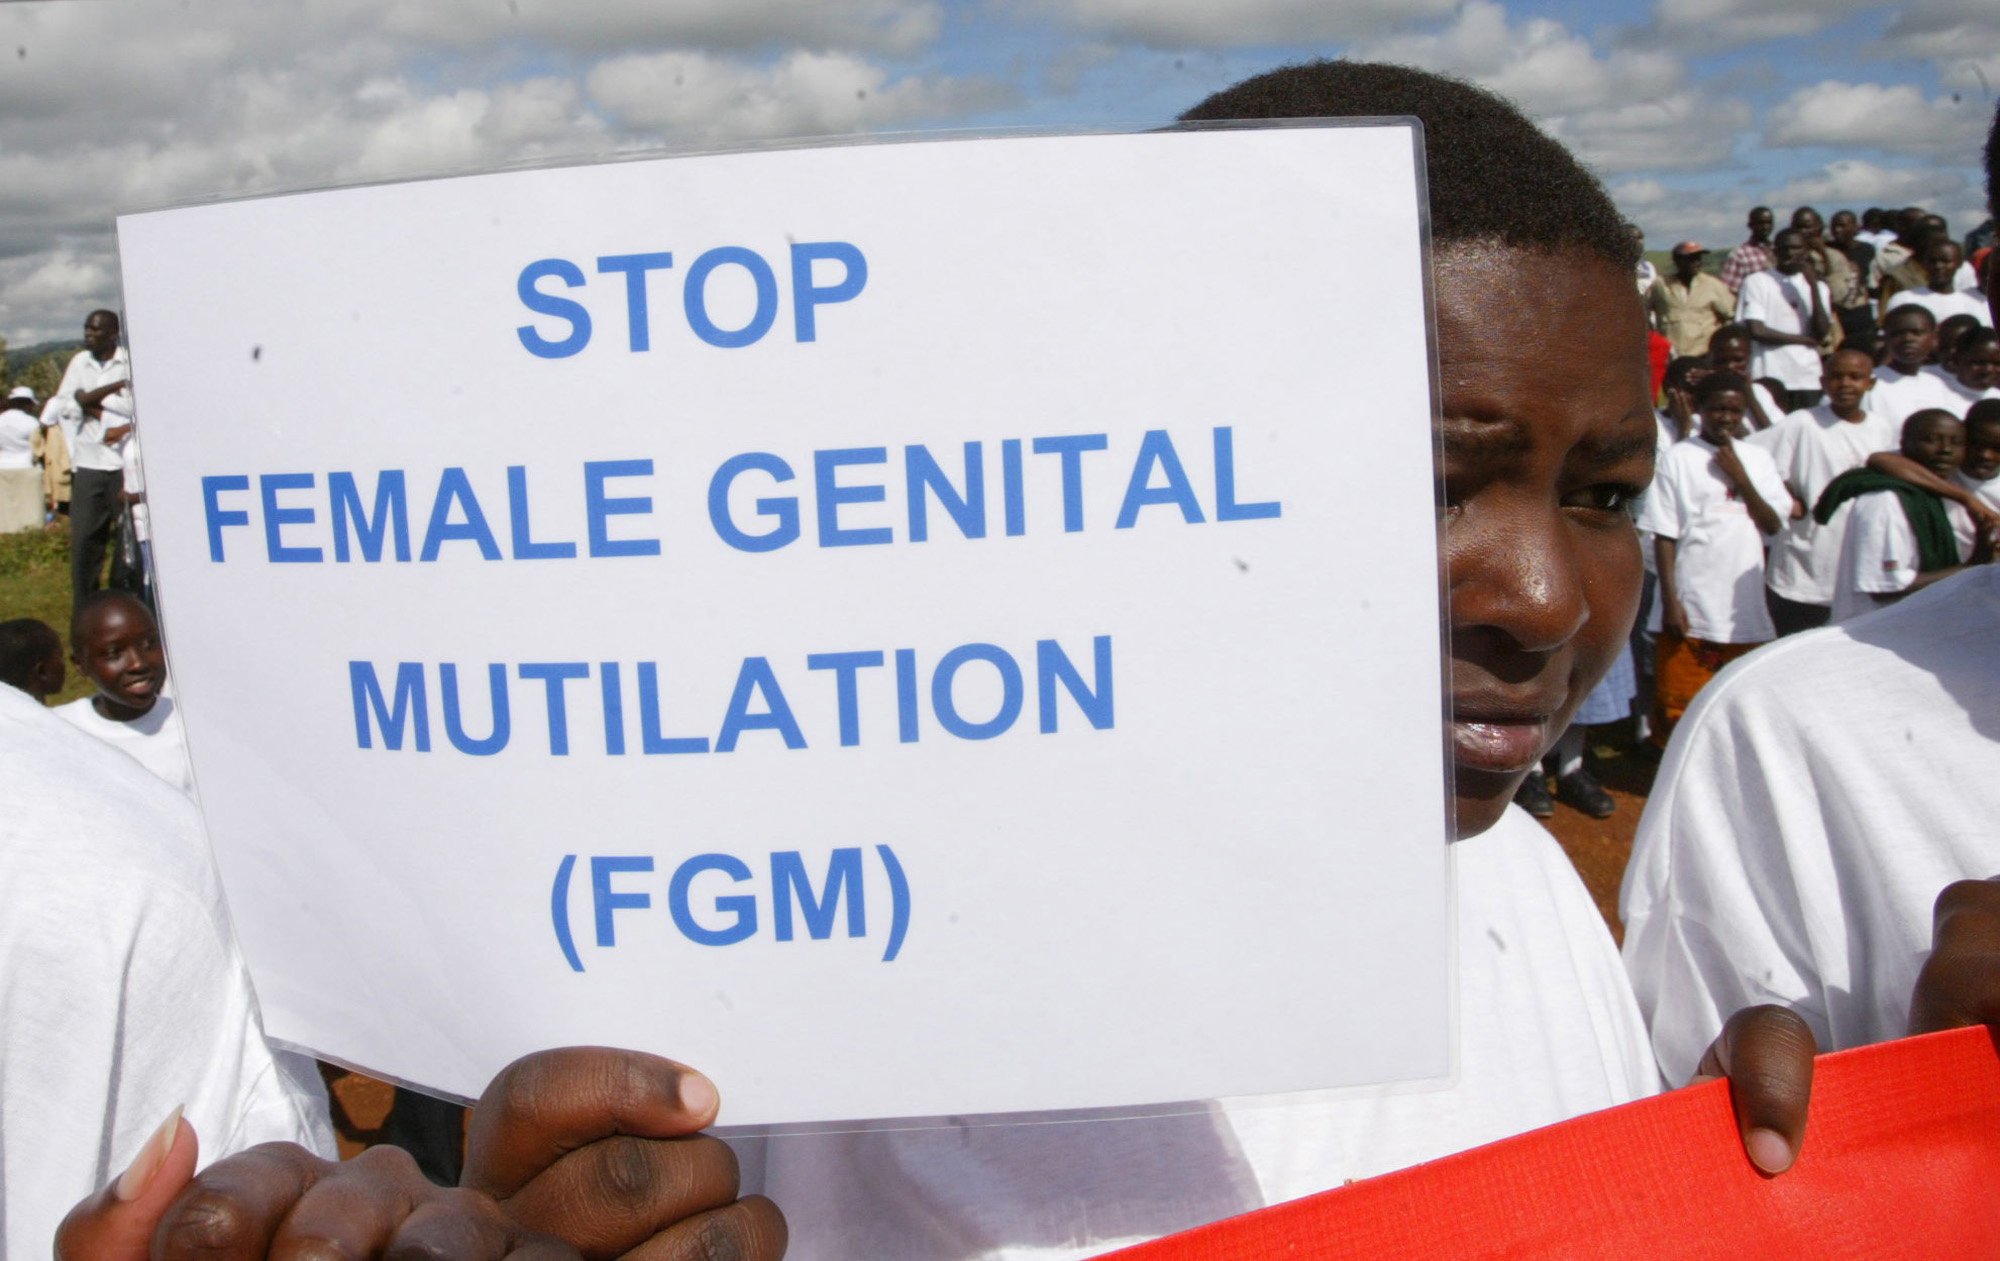 En masajflicka under en protest mot könsstympning 2007. Nu visar en rapport från EU att ett projekt tillsammans med Unicef räddat tusentals flickor i flera länder.